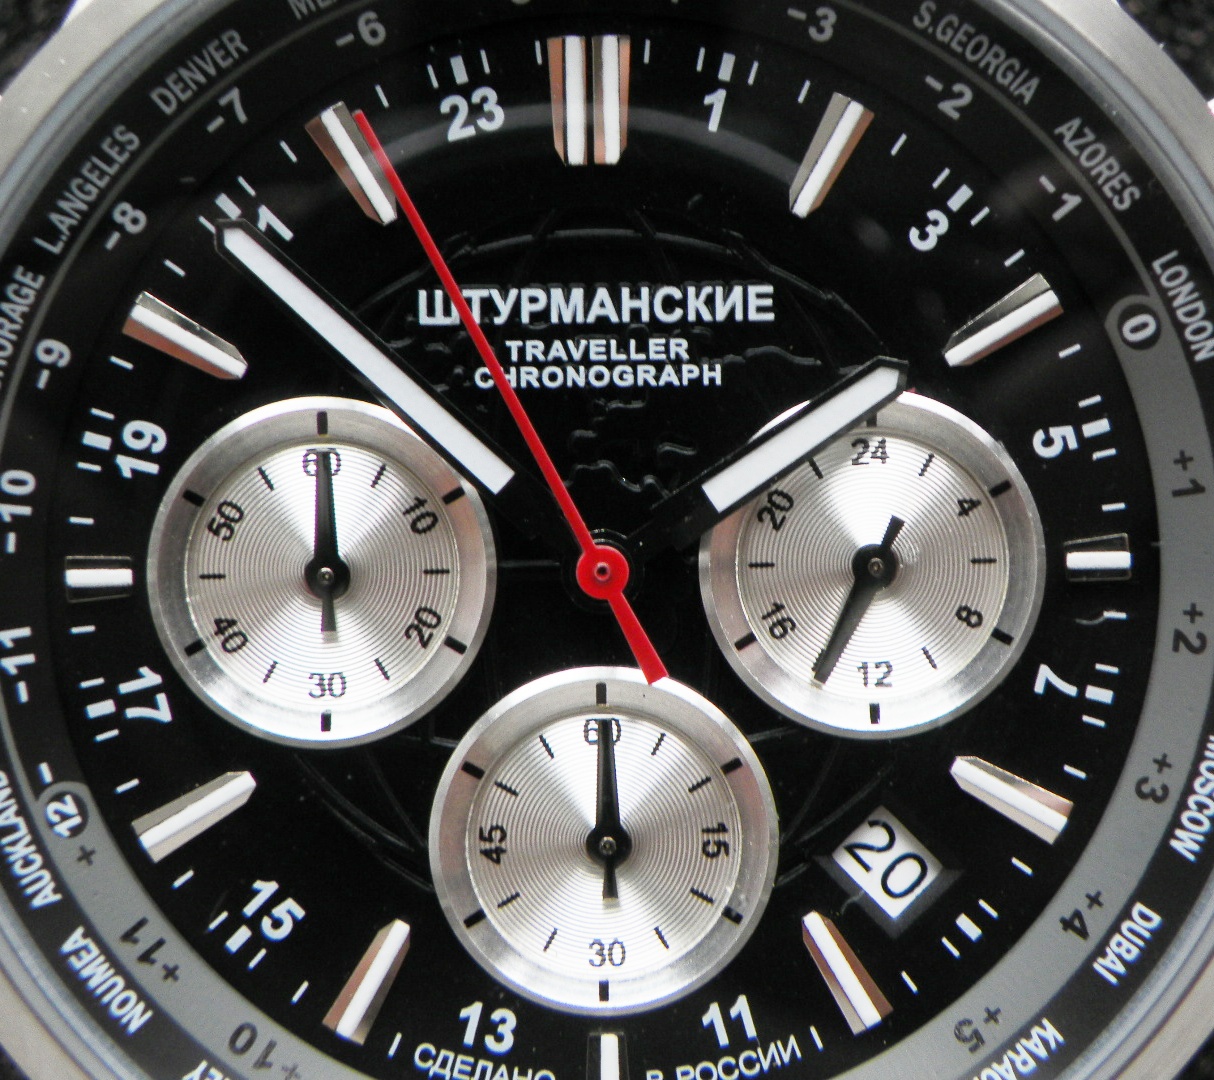 Sturmanskie Traveller Quartz Watch VD53/3385877 4